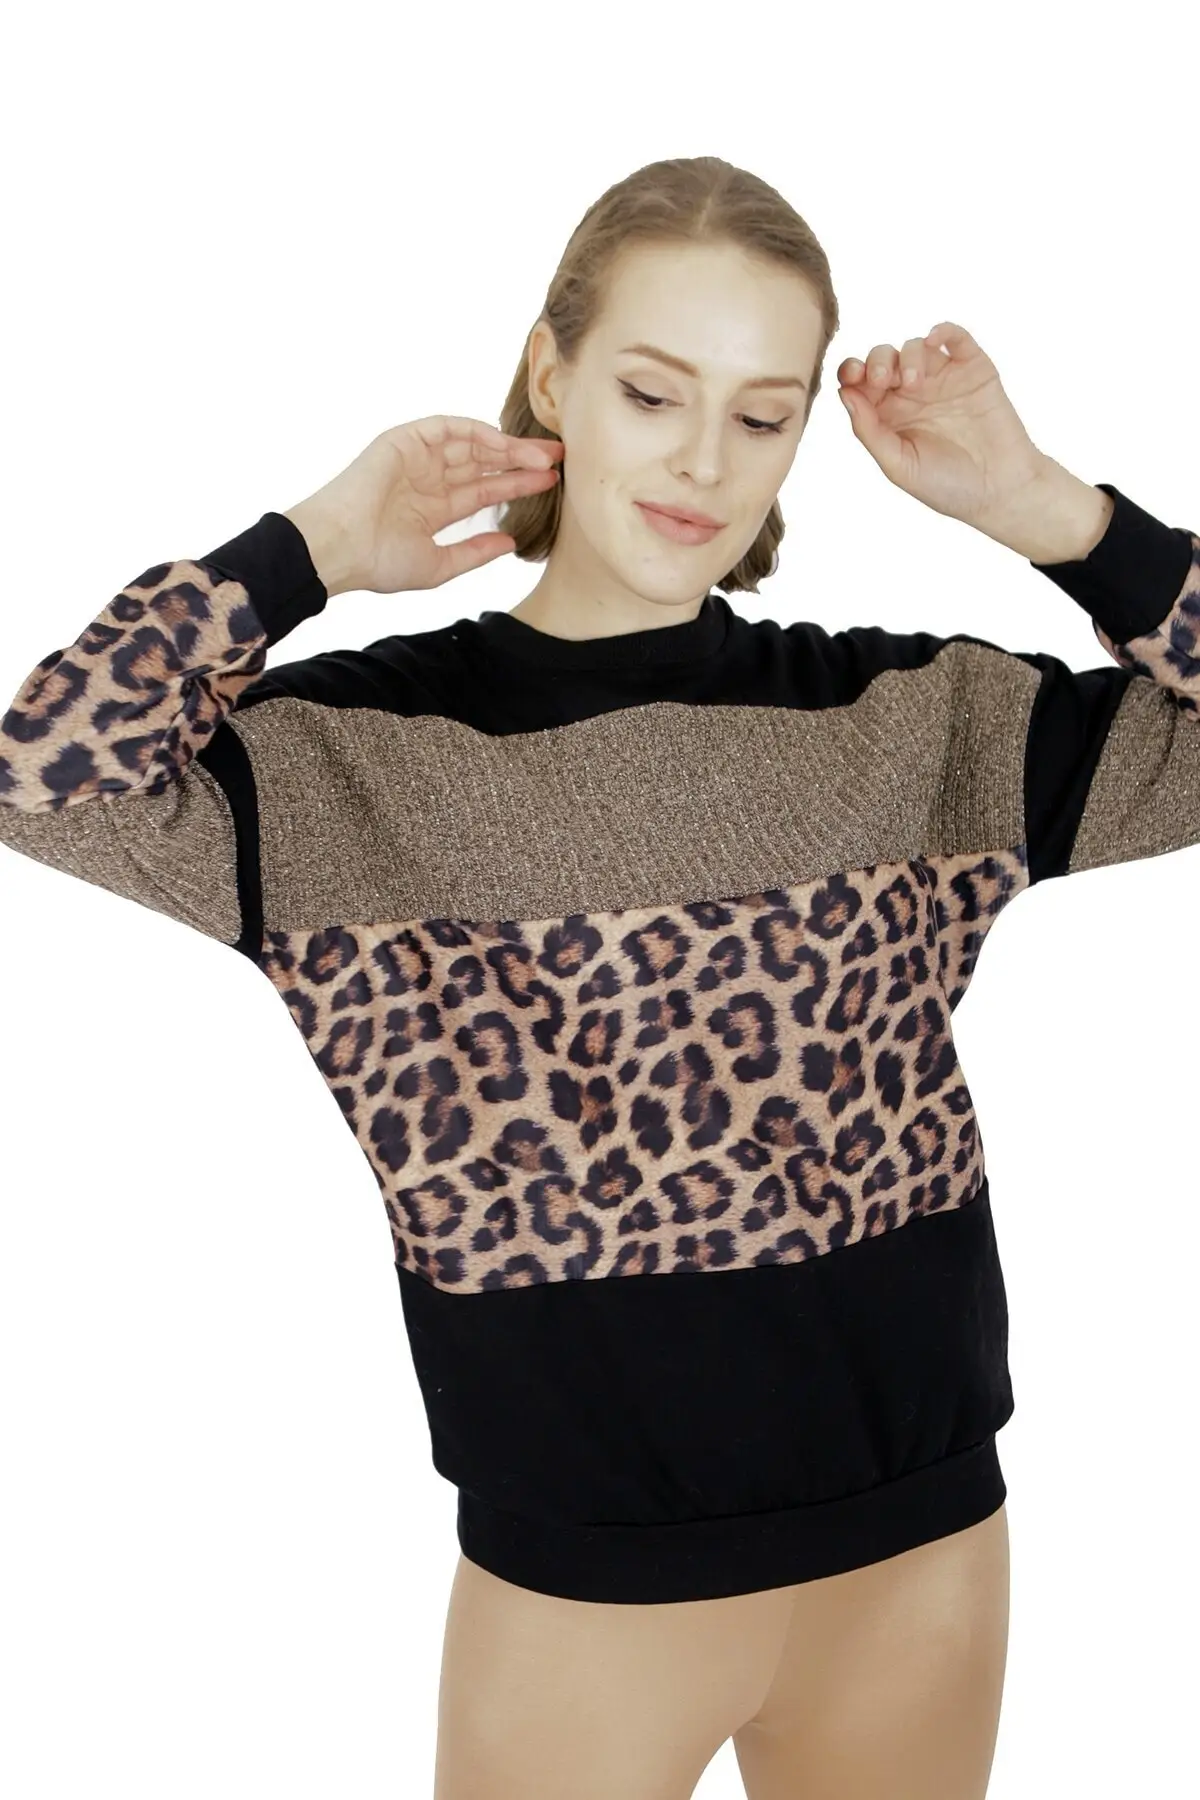 Фото Женский черный верблюжий Леопардовый пуловер женский свитер | Женская одежда